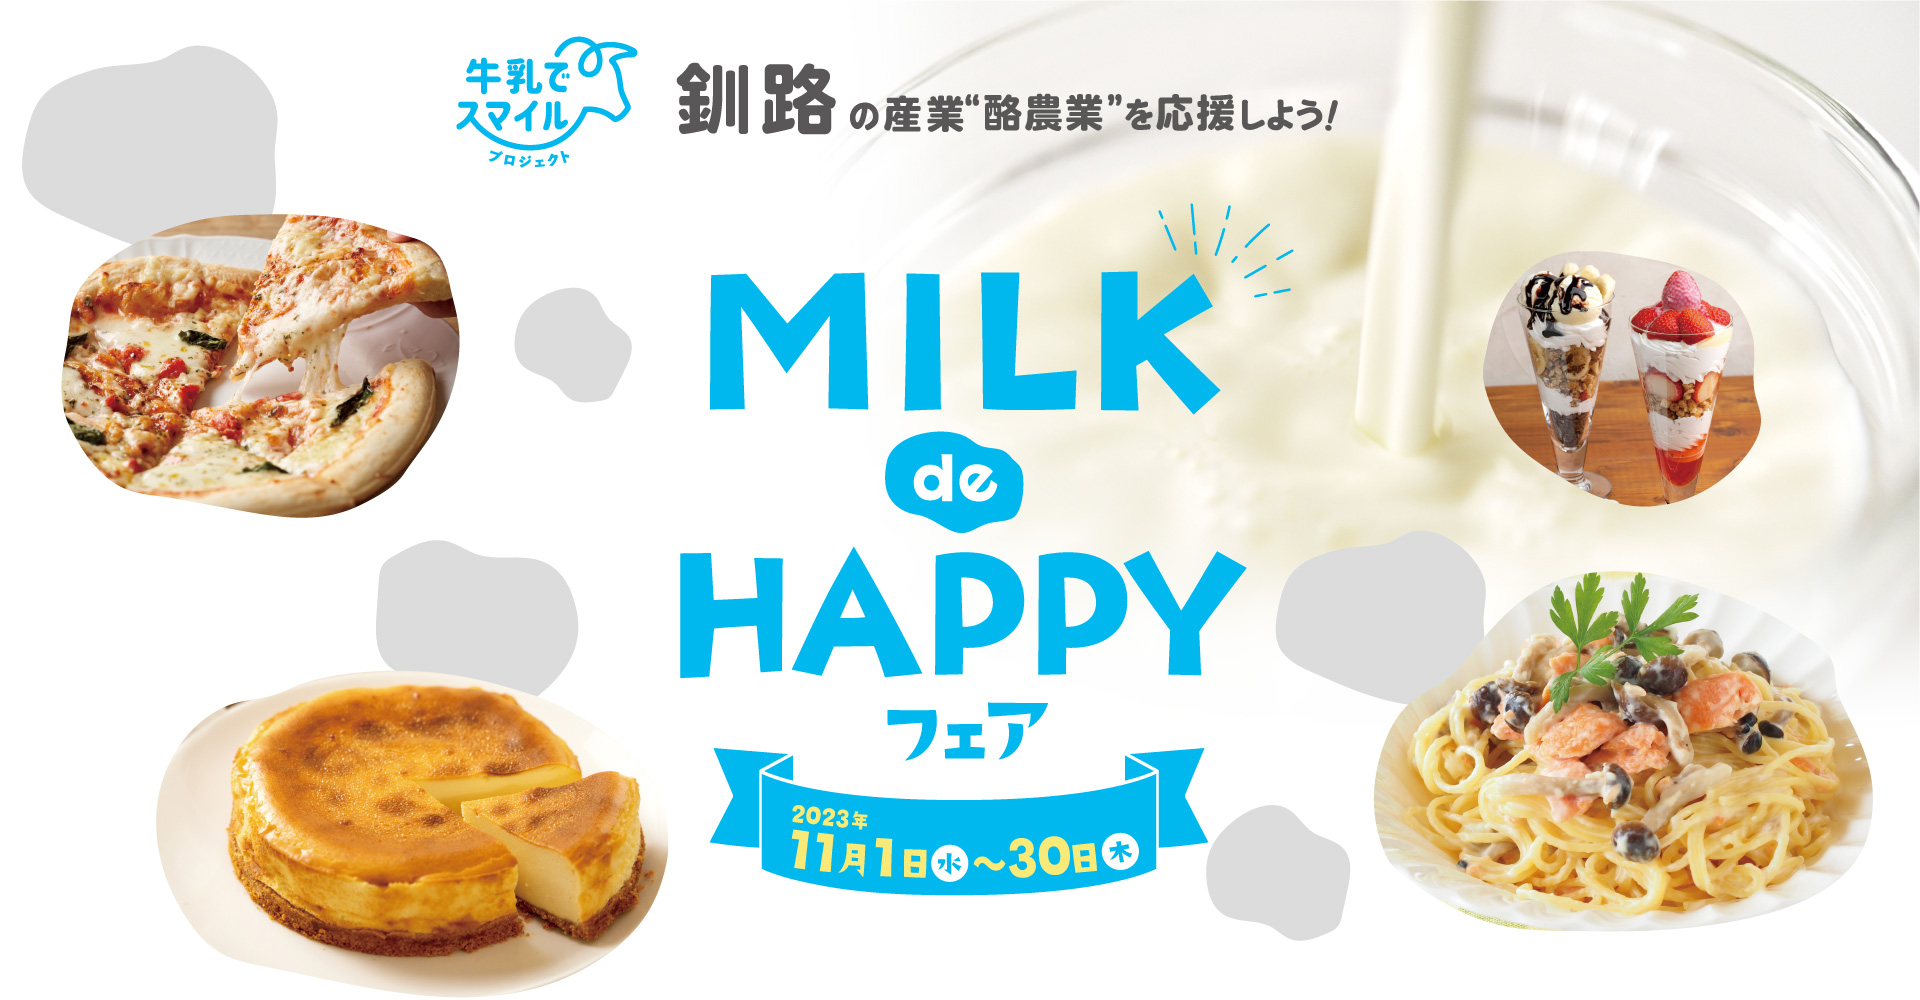 釧路の産業“酪農業”を応援しよう！| MILK de HAPPYフェア